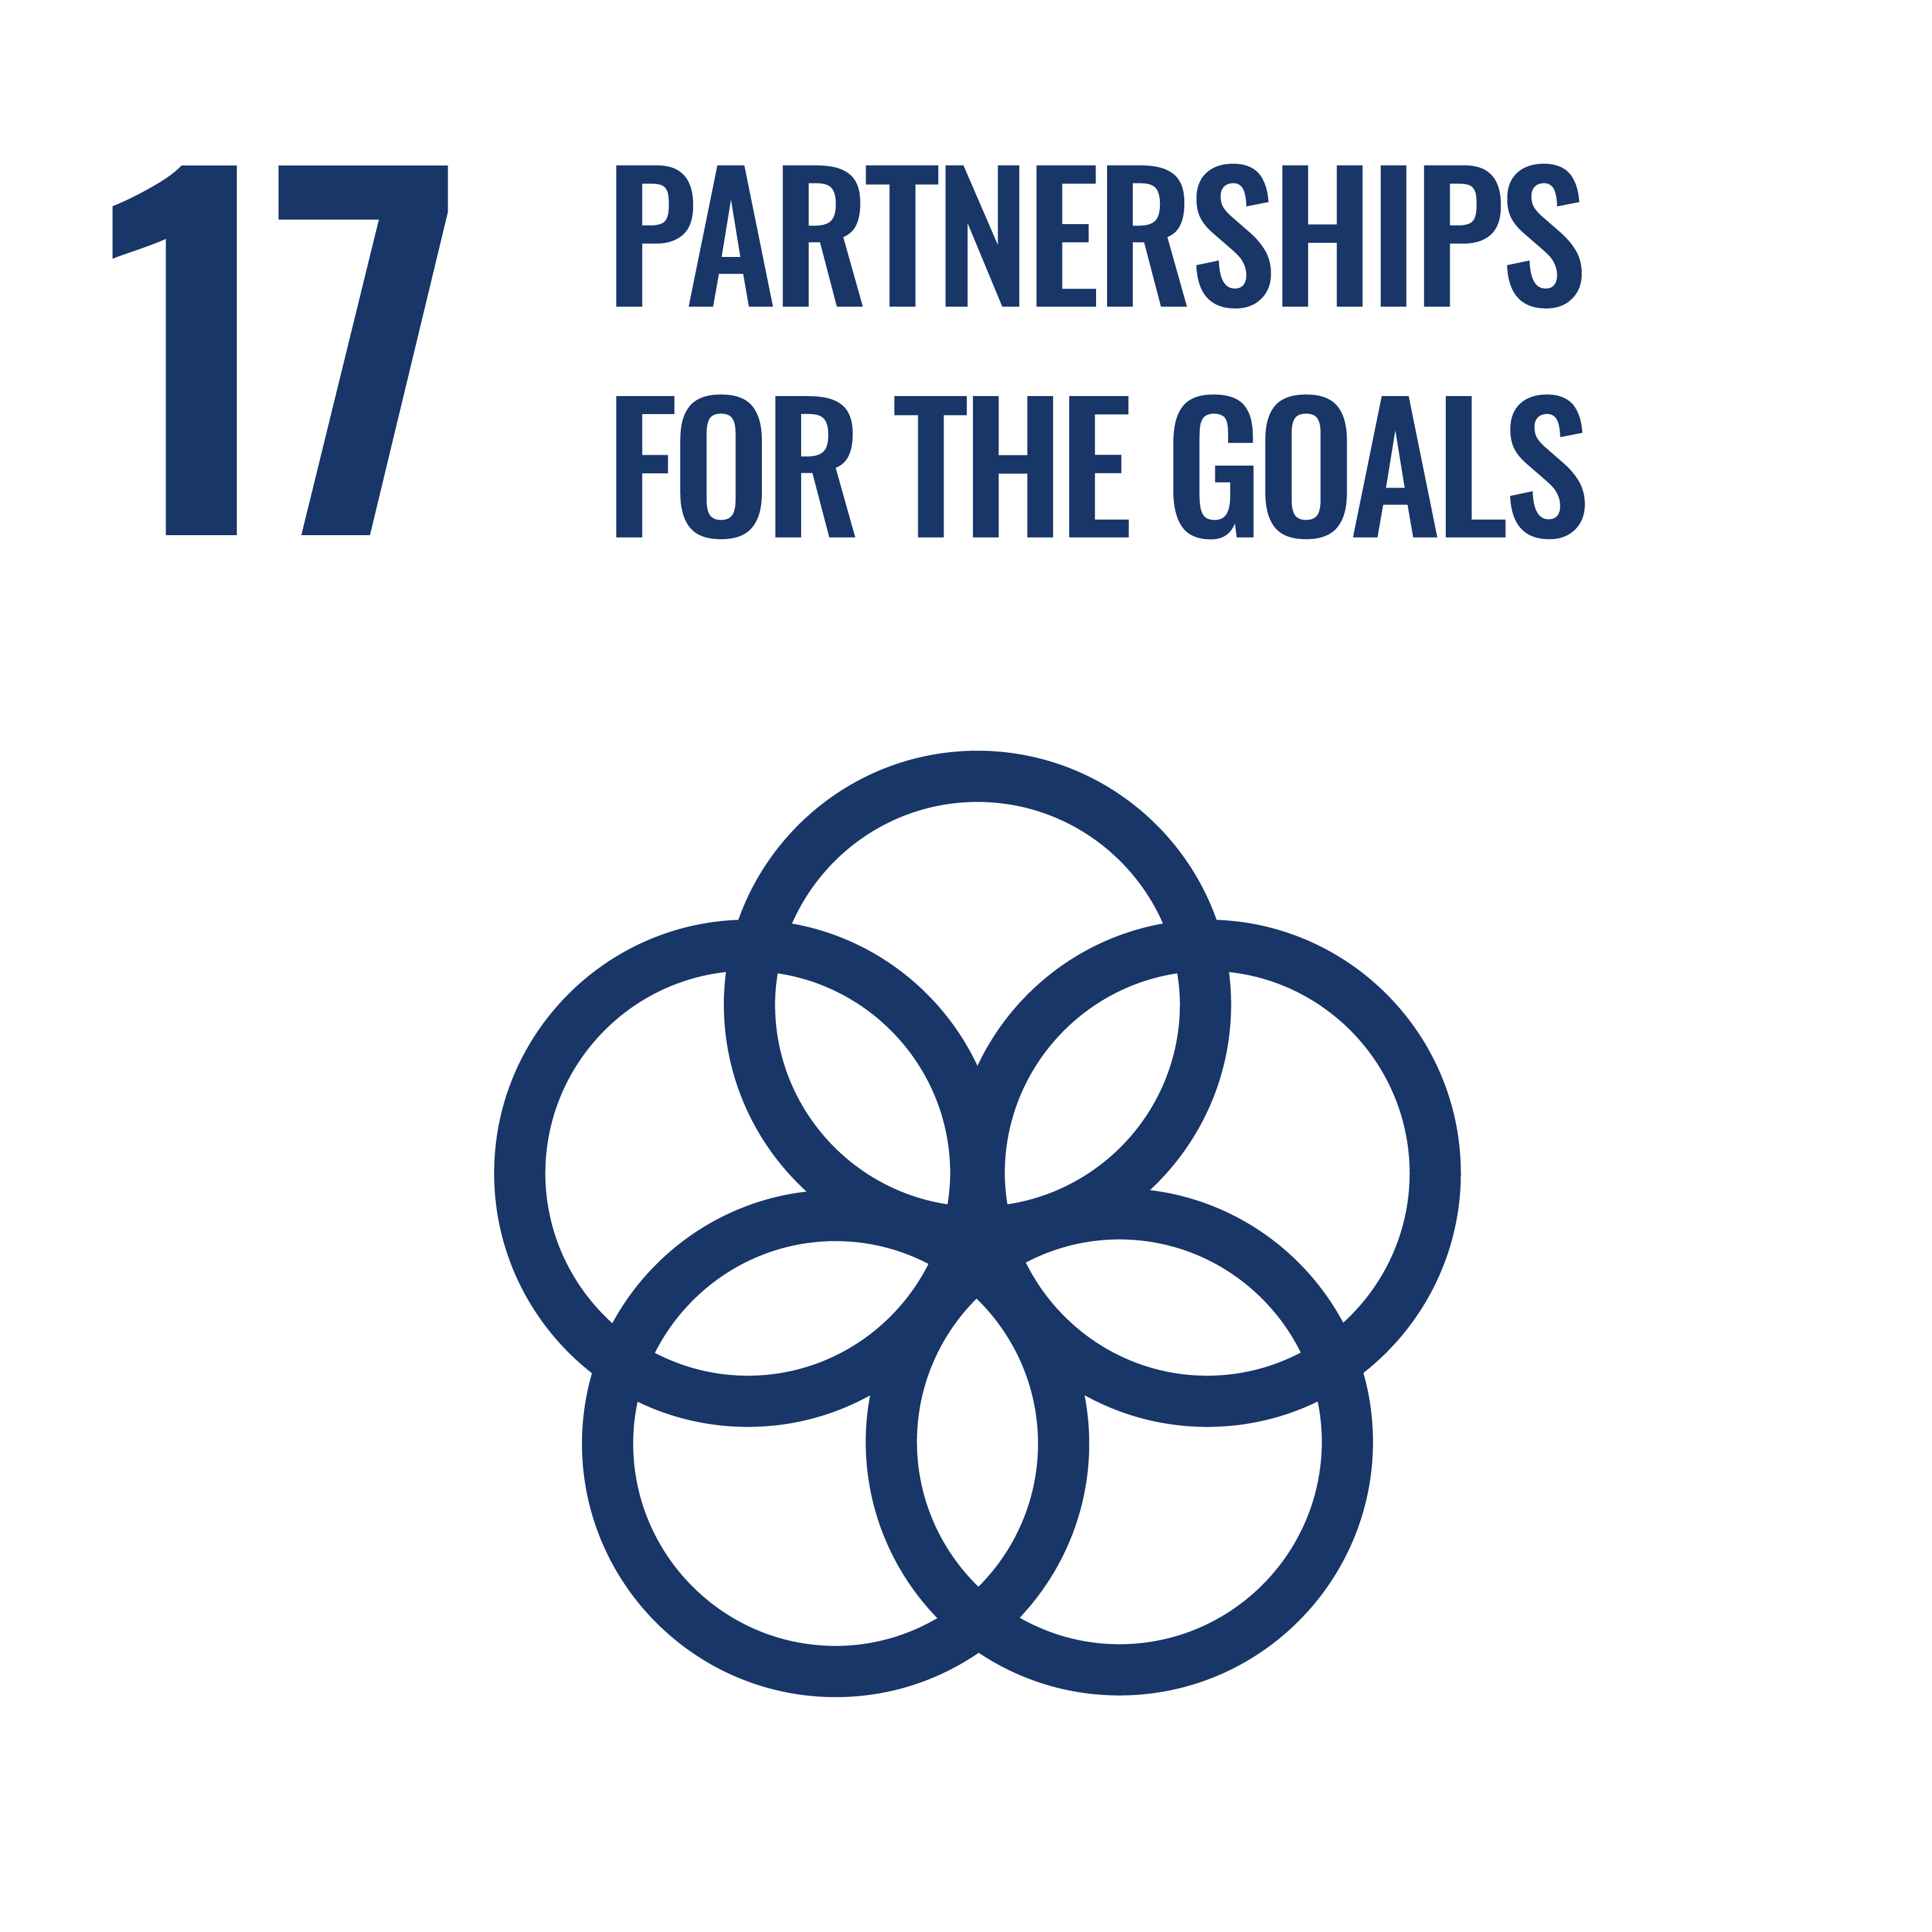 SDG 17: Partnership for the Goals